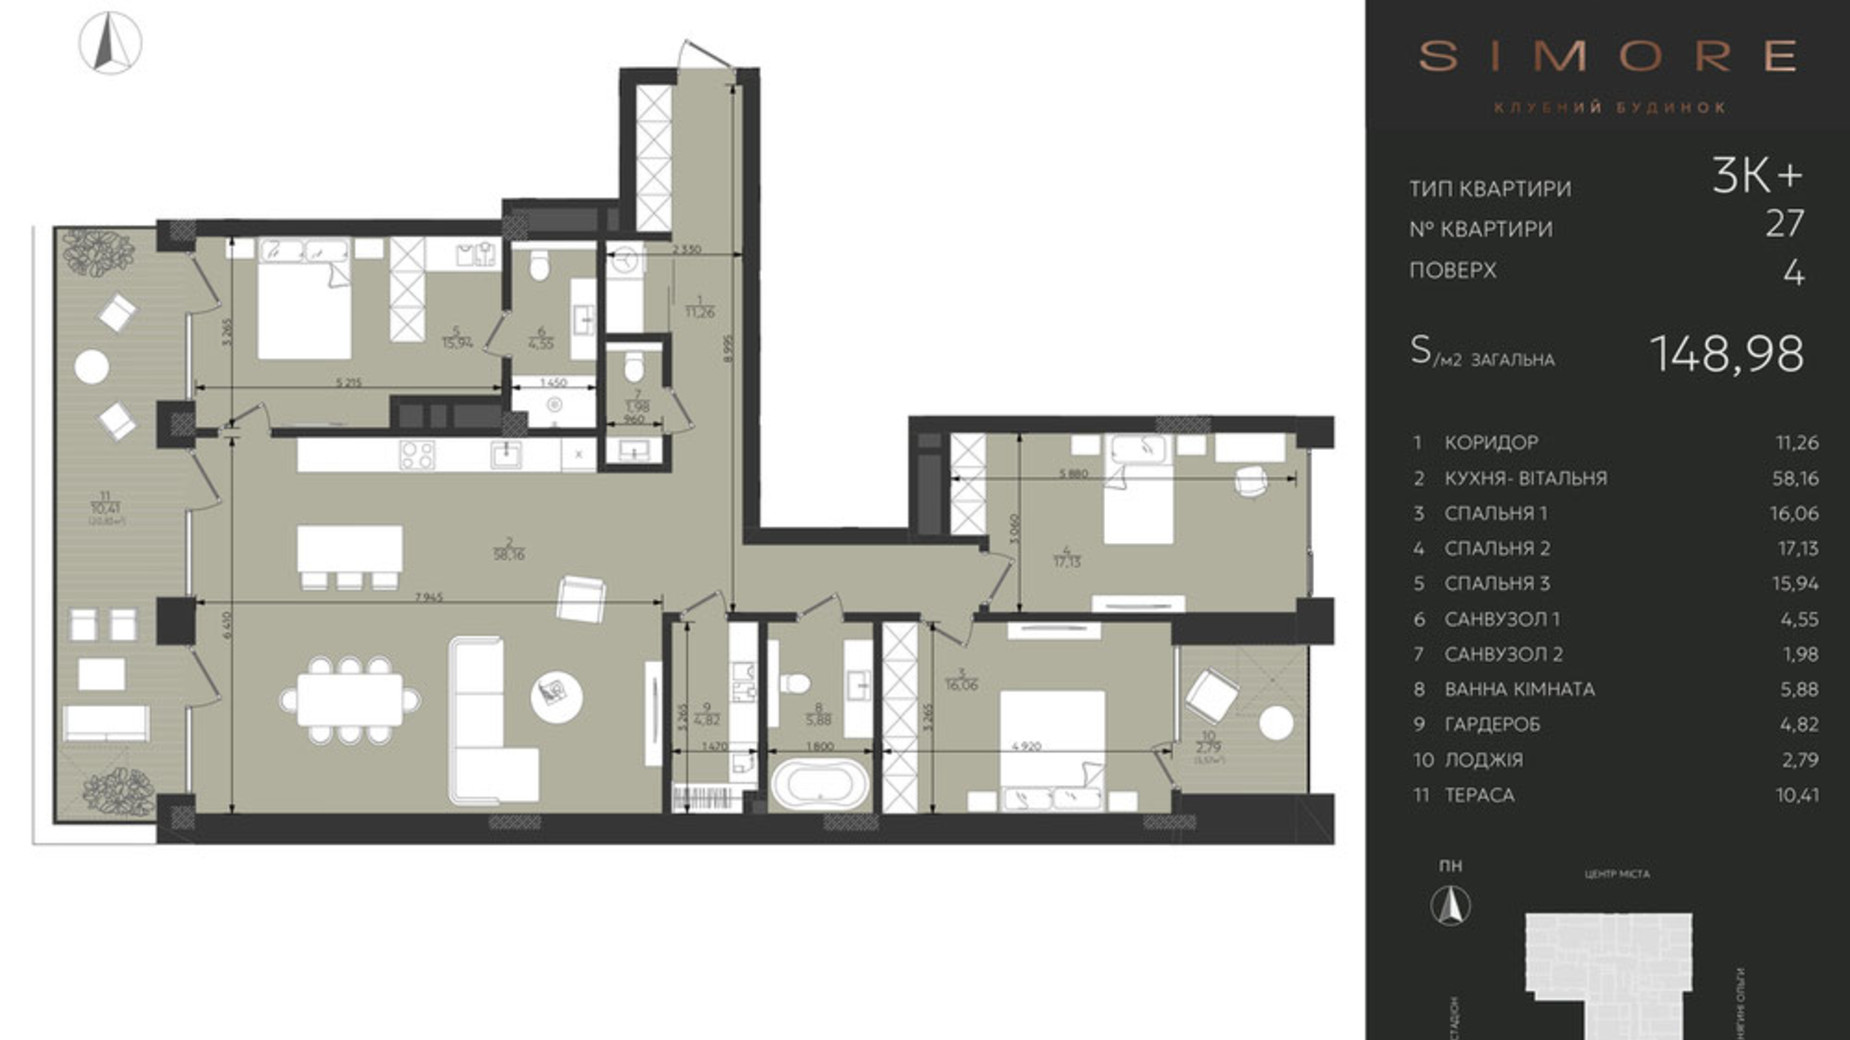 Планировка 3-комнатной квартиры в Клубный дом Simore 148.98 м², фото 694207